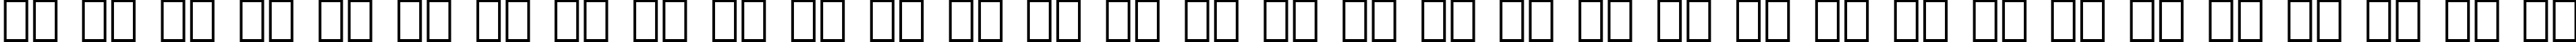 Пример написания русского алфавита шрифтом Bremen Black BT